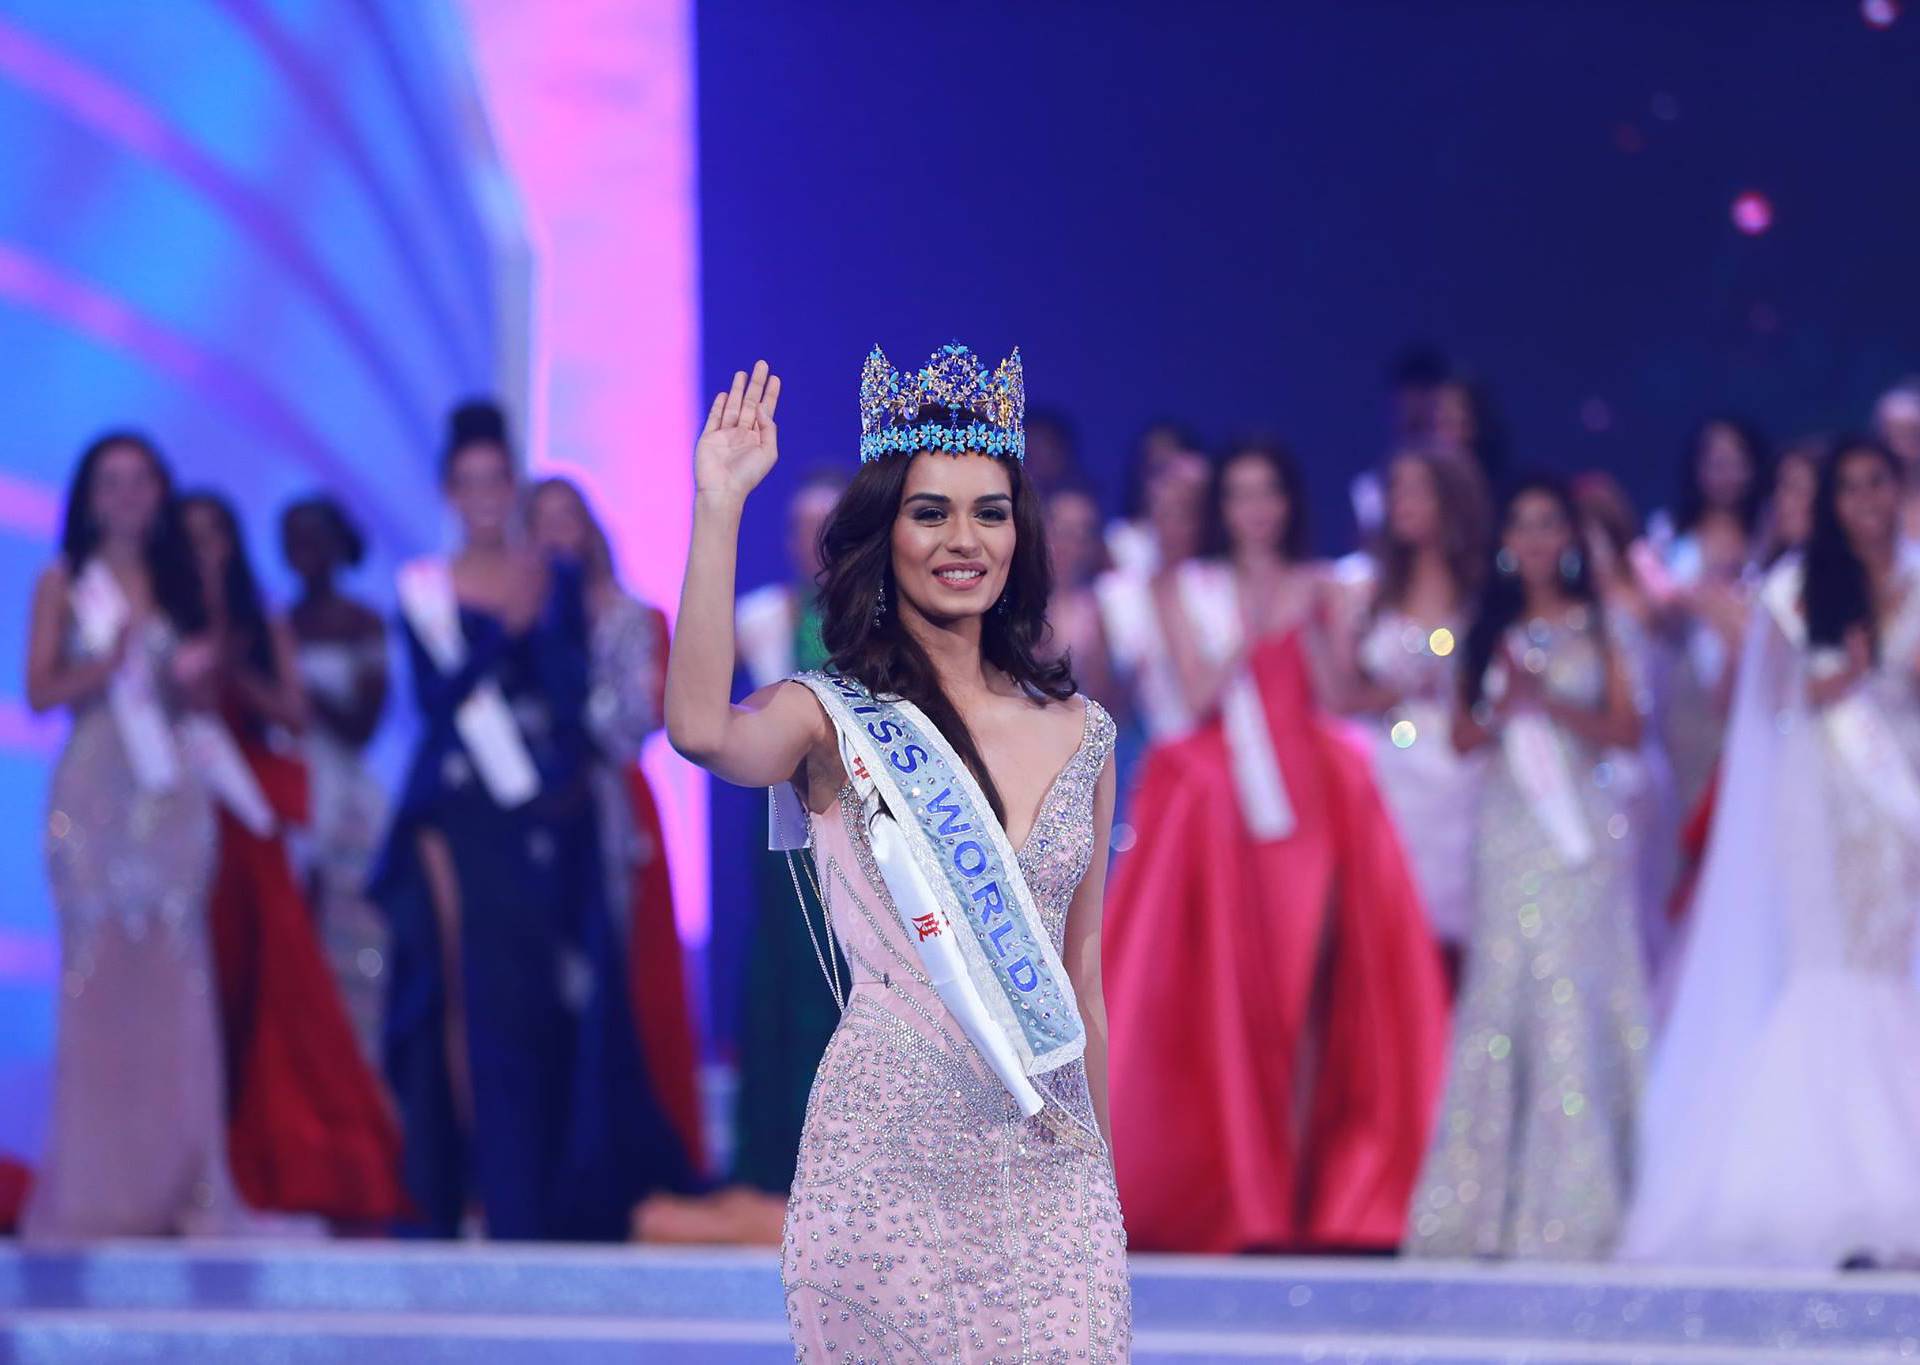 Besprijekorna je: Miss svijeta je studentica medicine iz Indije